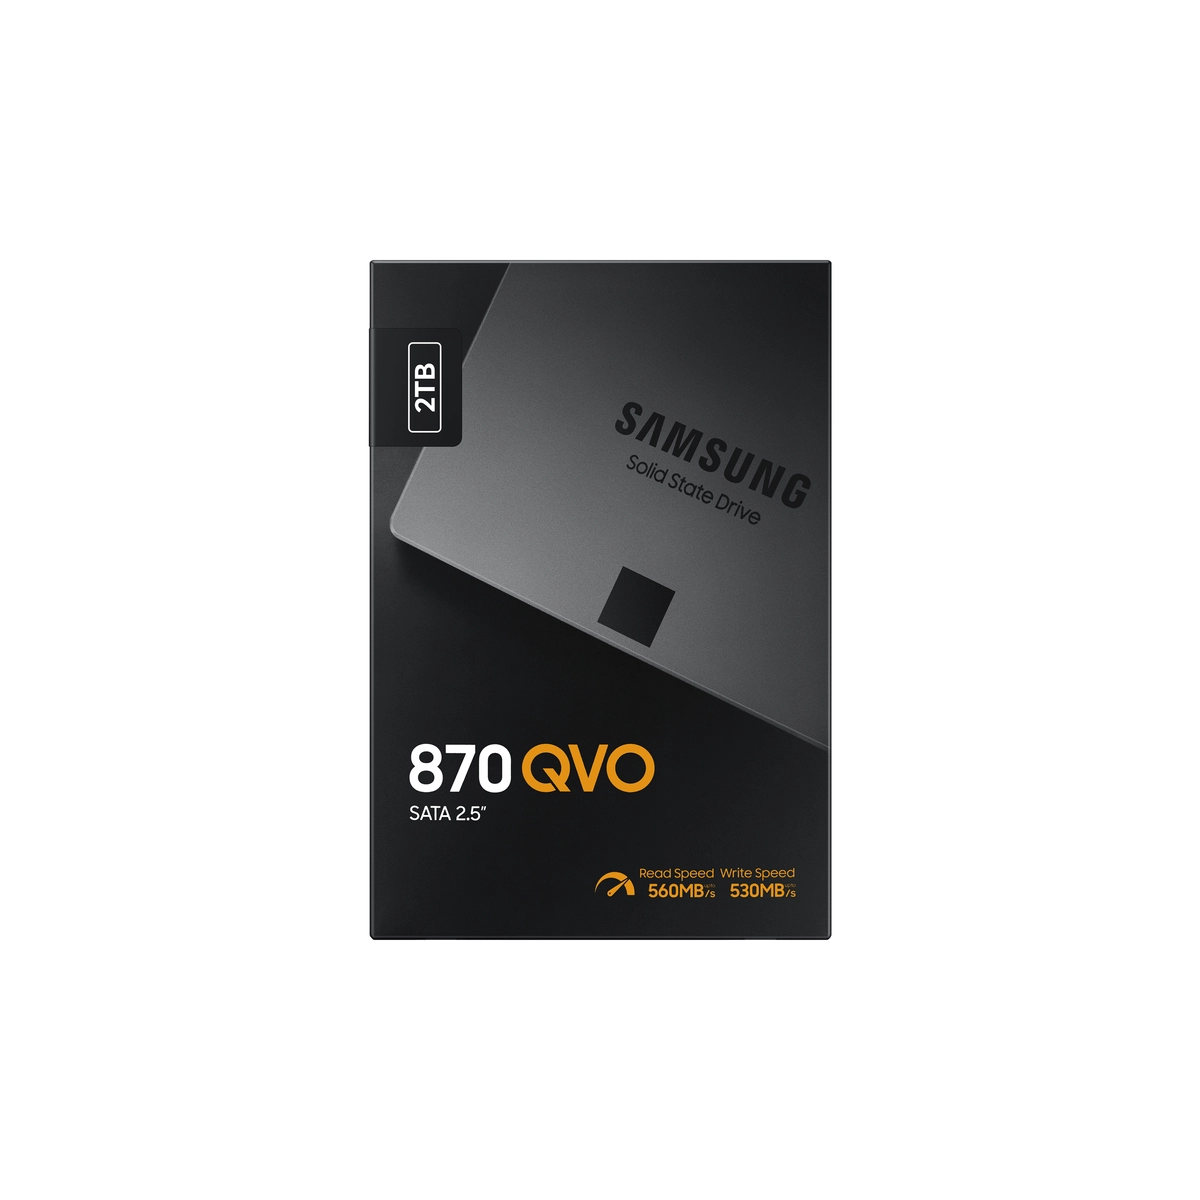 SSD Int 2TB 870 QVO SATA